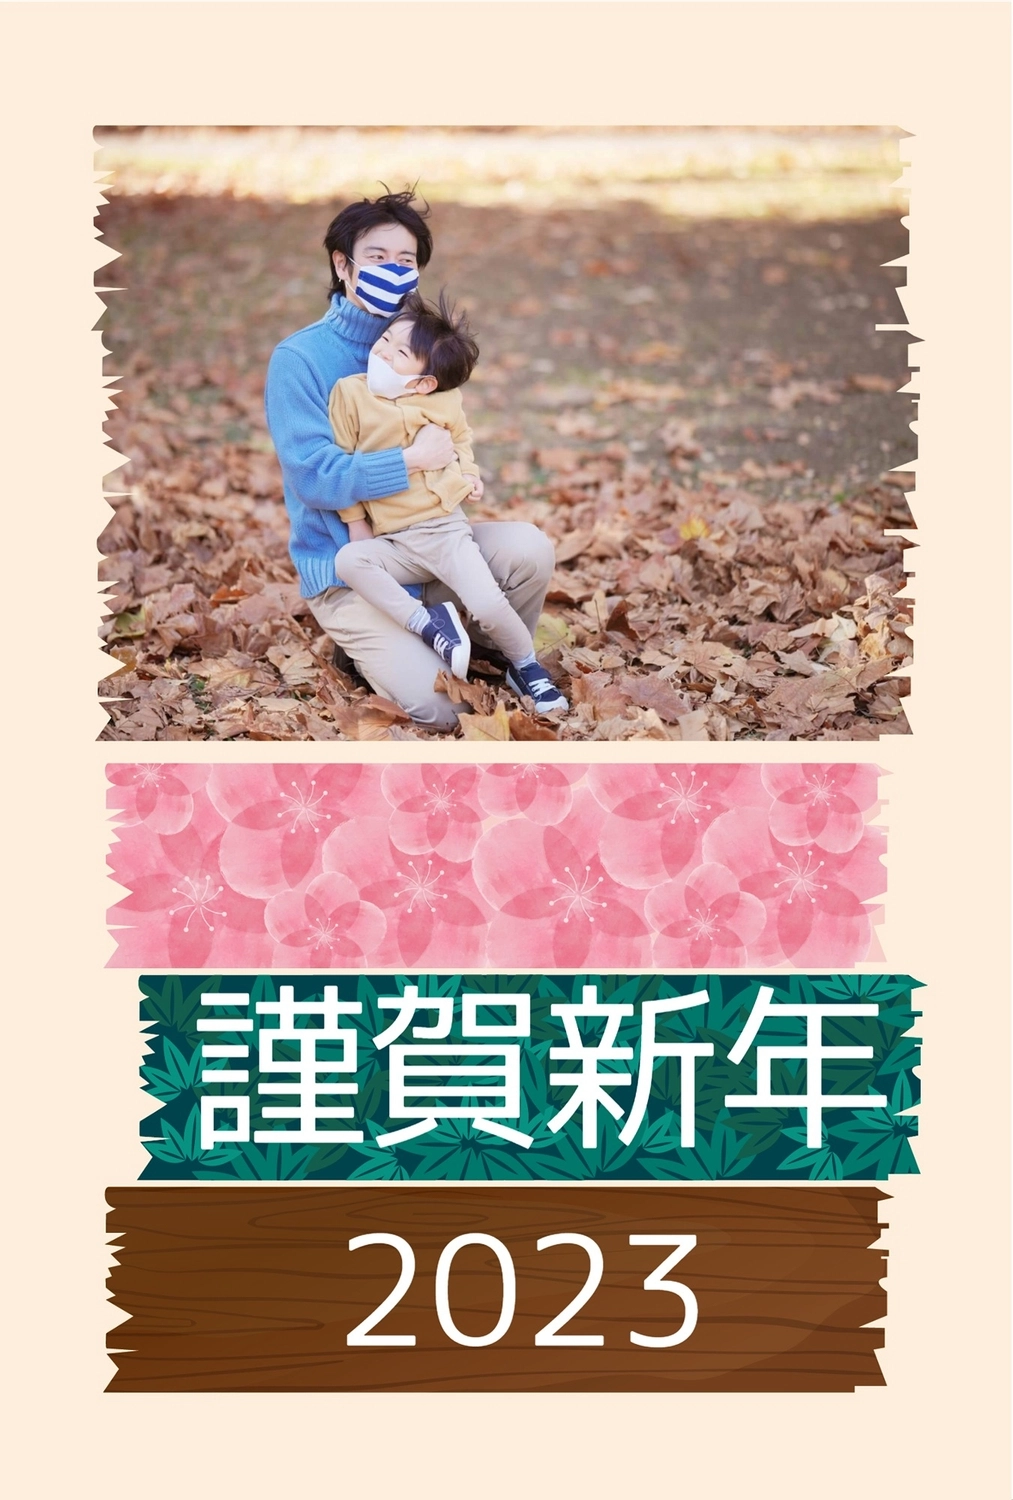 謹賀新年　マスキングテープ風フォトフレーム, No zodiac, fourth sign of Chinese zodiac (The Hare, 5am-7am, east, February), 2023, New Year Card template